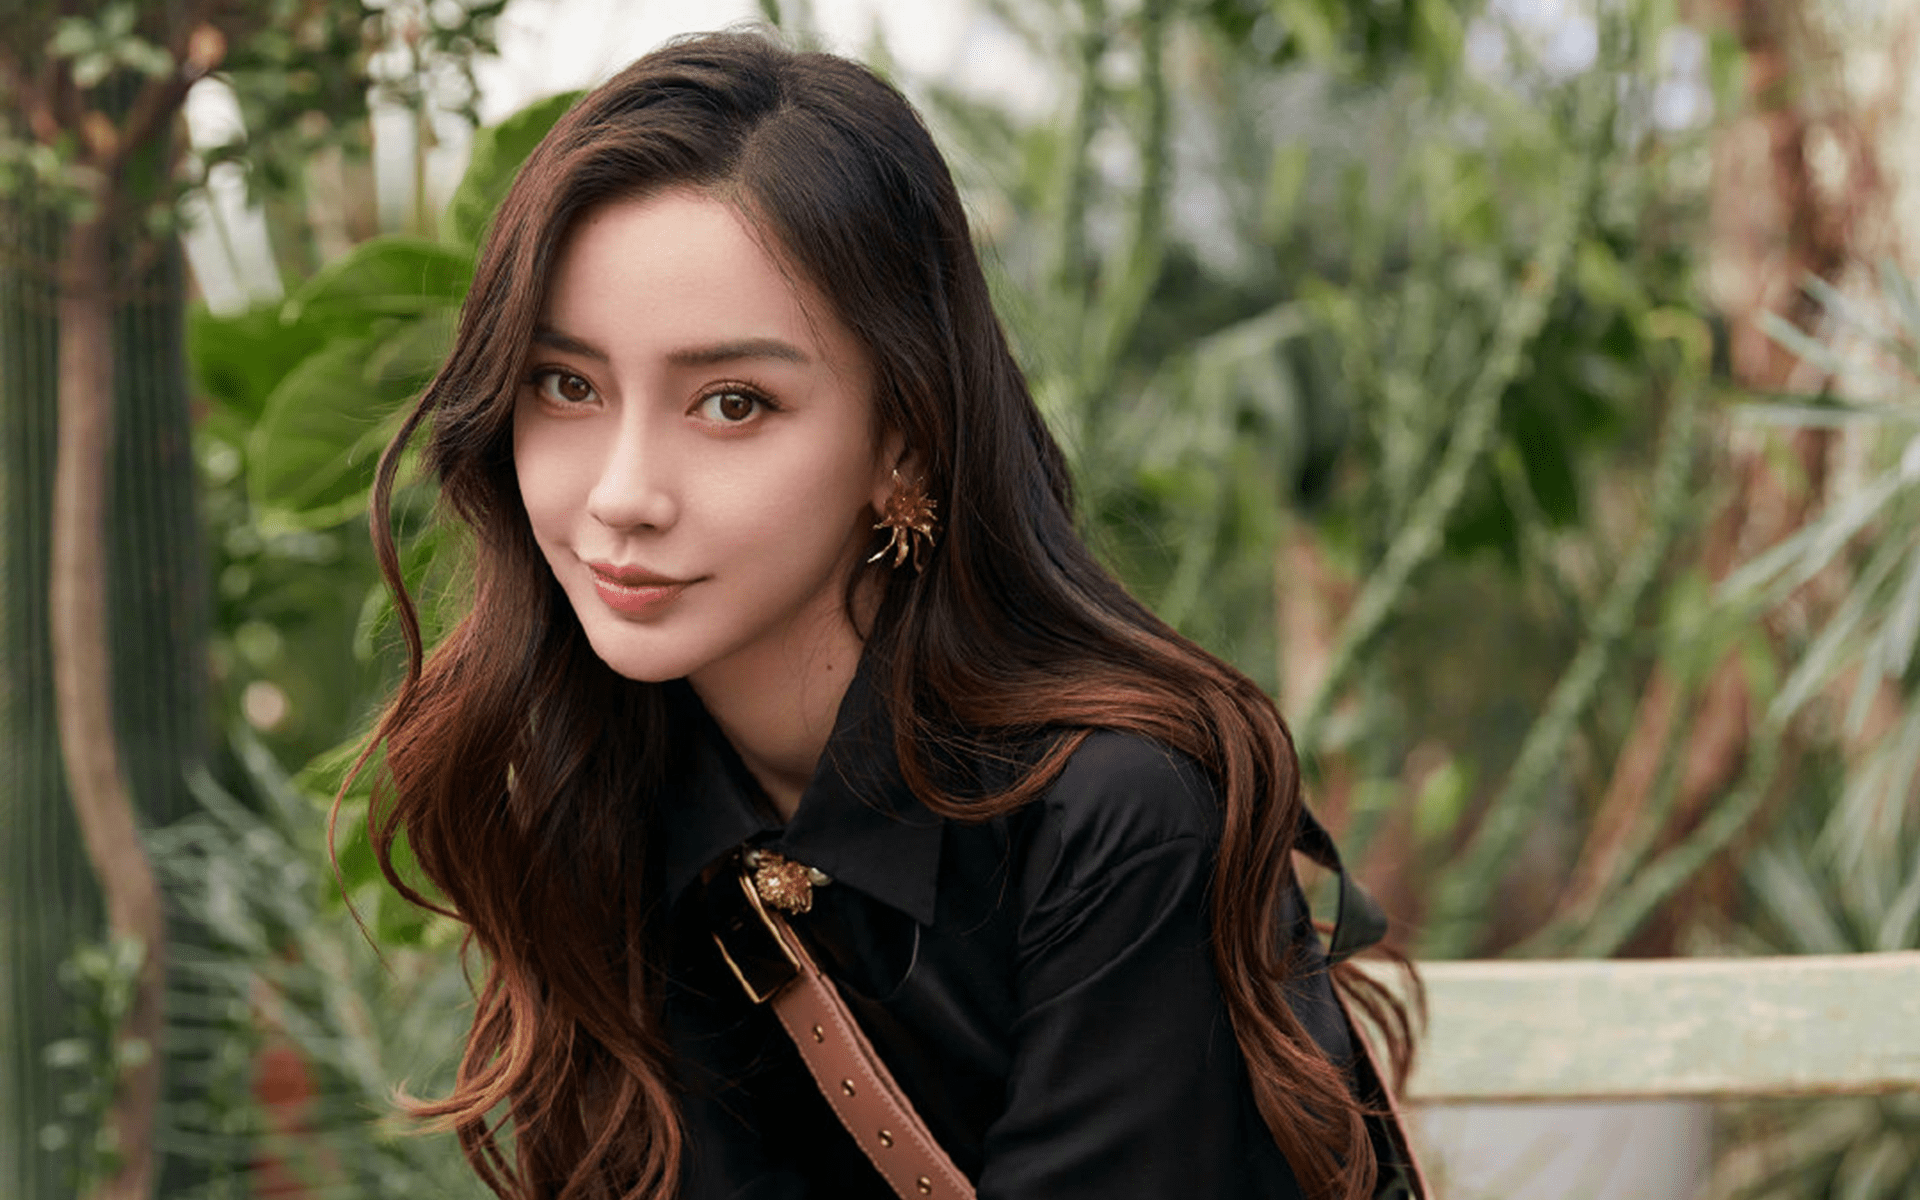 明星爆料客 的想法: 杨颖亮相上海时装周,美貌依旧但引争议 